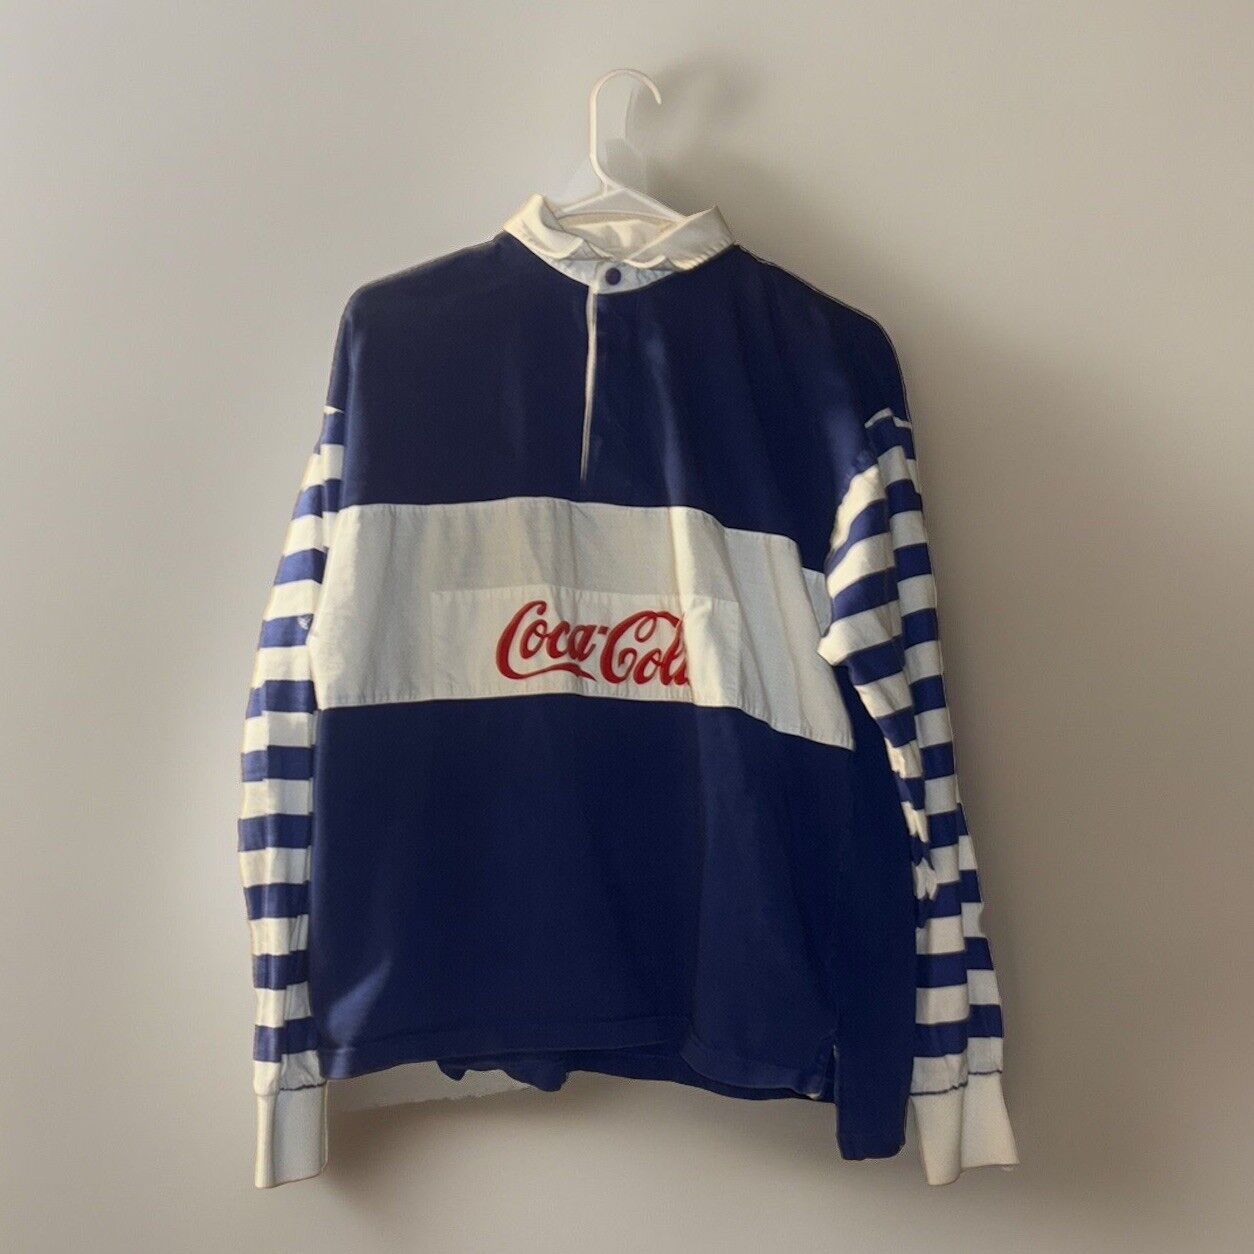 Vintage 1980s Coca-Cola Rugby Shirt Size M/L